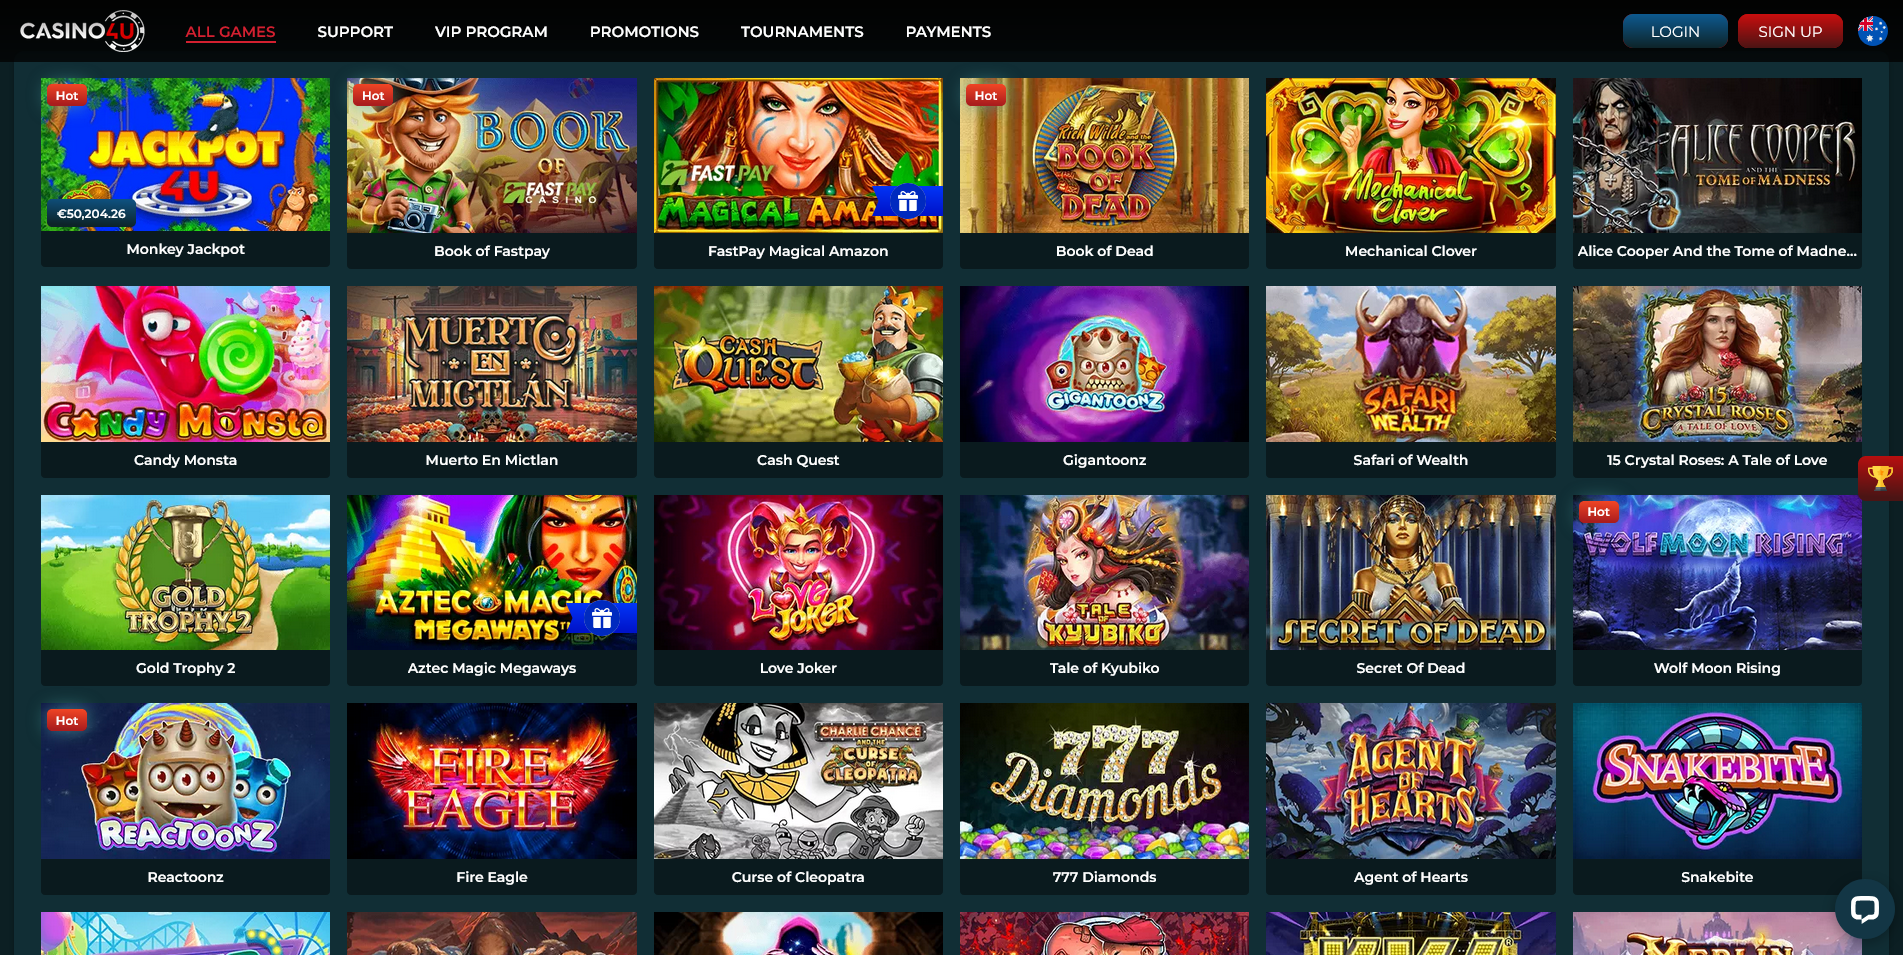 Screenshot of Pokies game on Casino4u casino